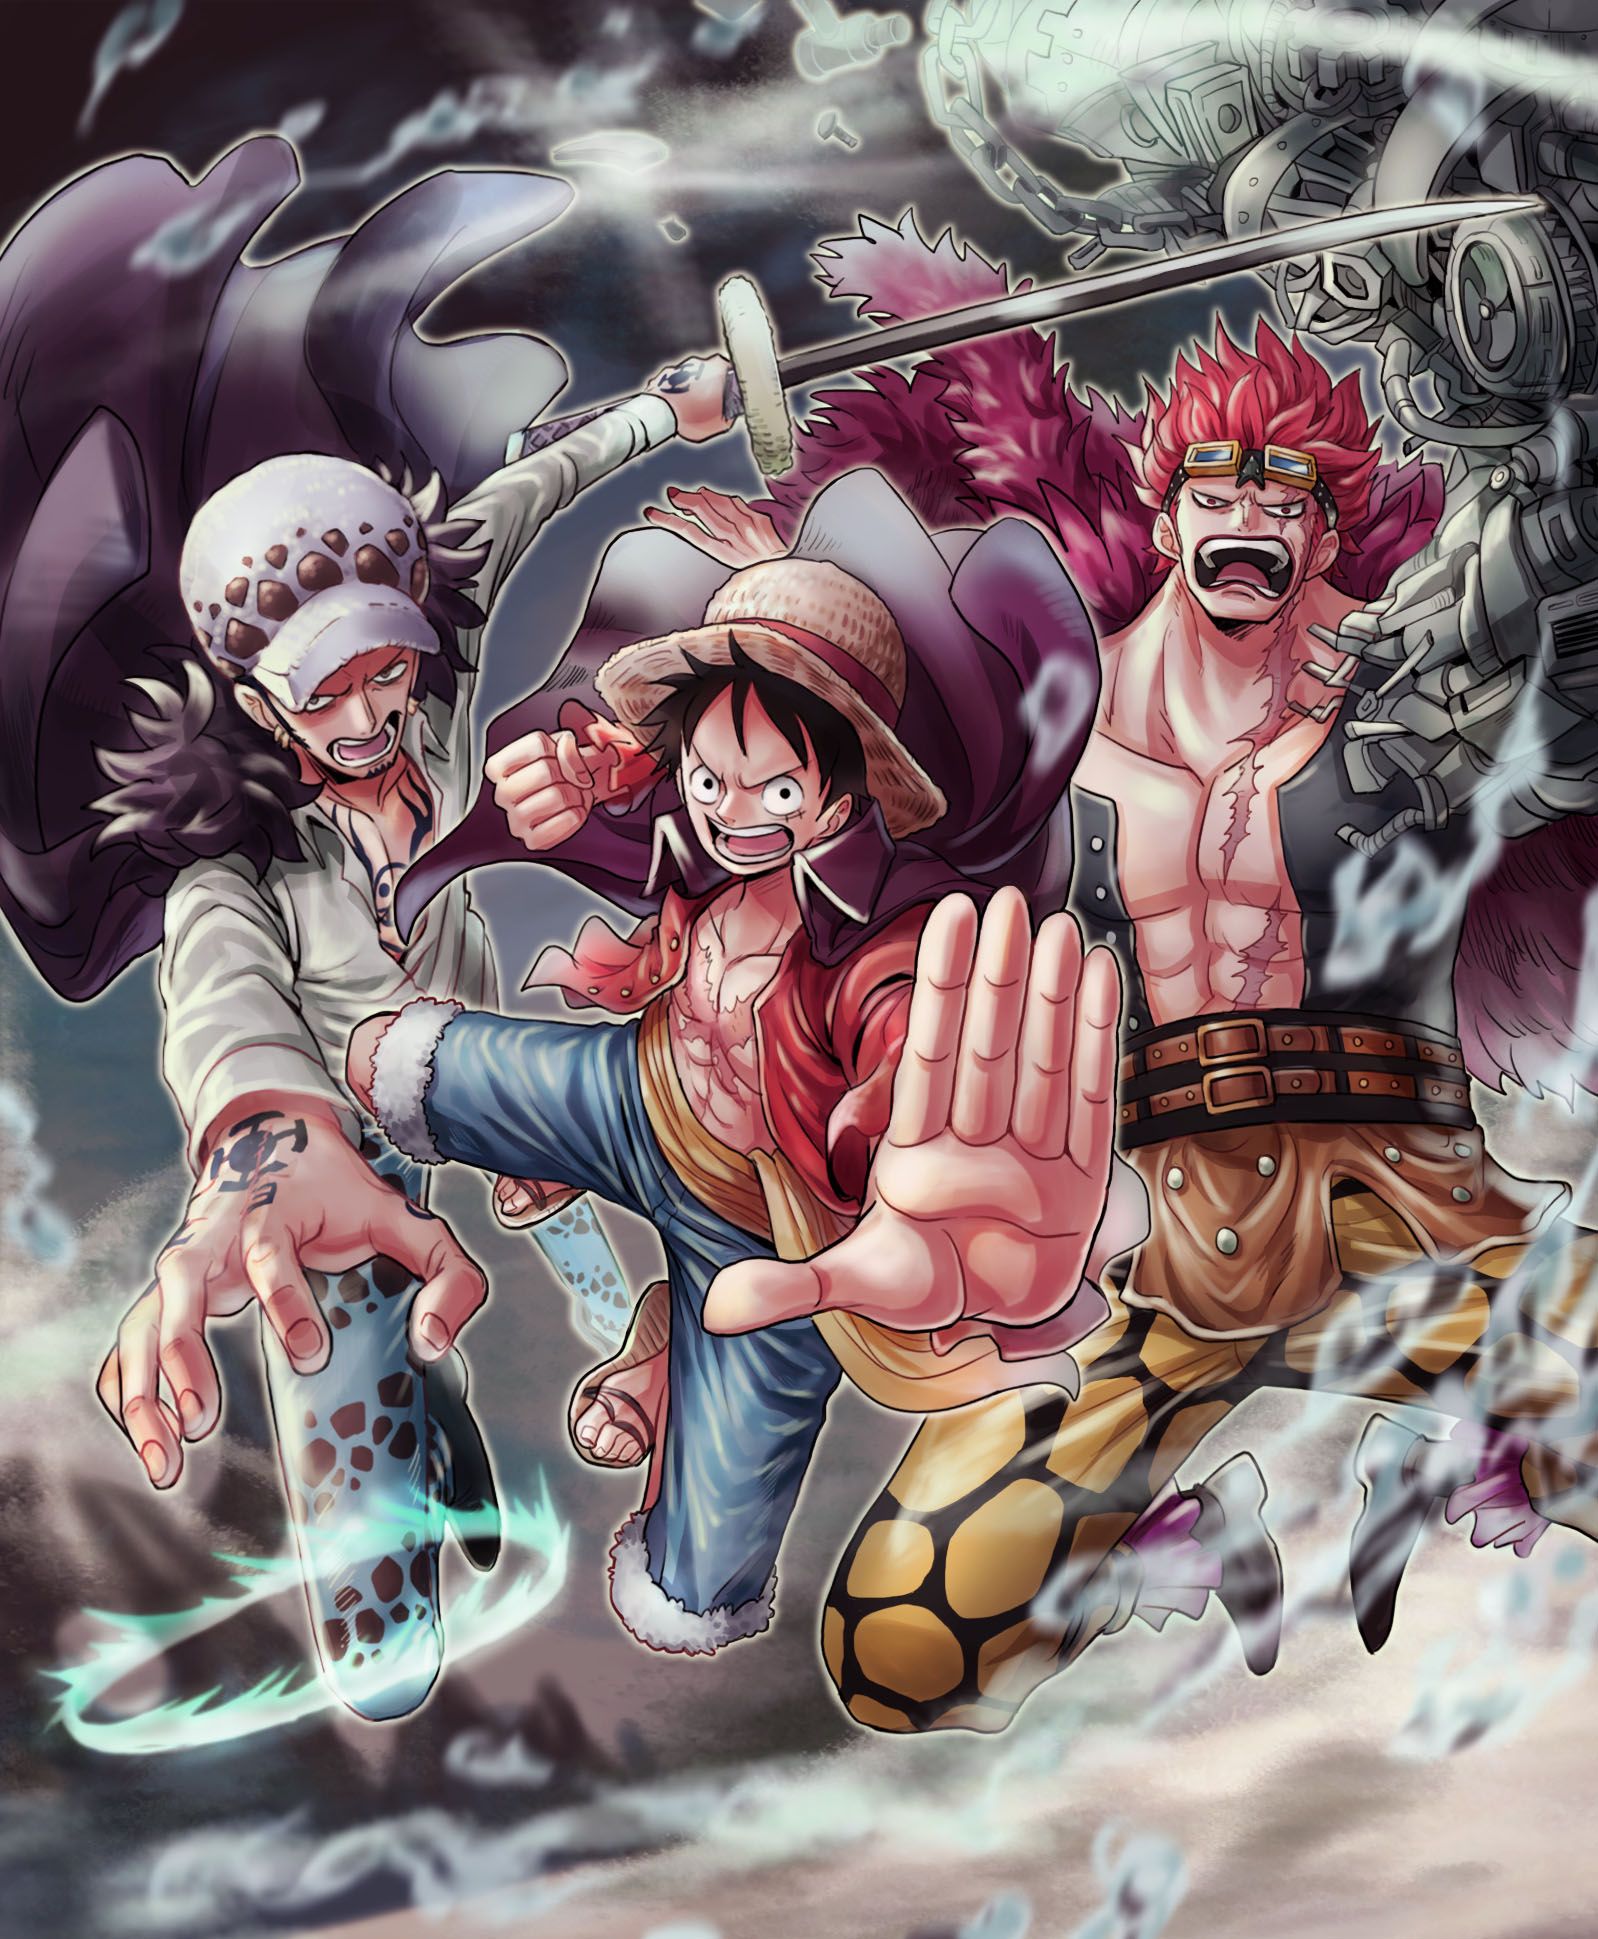 Tứ Hoàng là bốn vị hoàng đế đầy quyền lực và uy tín trong bộ truyện One Piece. Những hình ảnh về họ sẽ khiến bạn cảm nhận được sức mạnh, tài năng và thẩm quyền của họ đối với tất cả các vùng đất trong truyện.